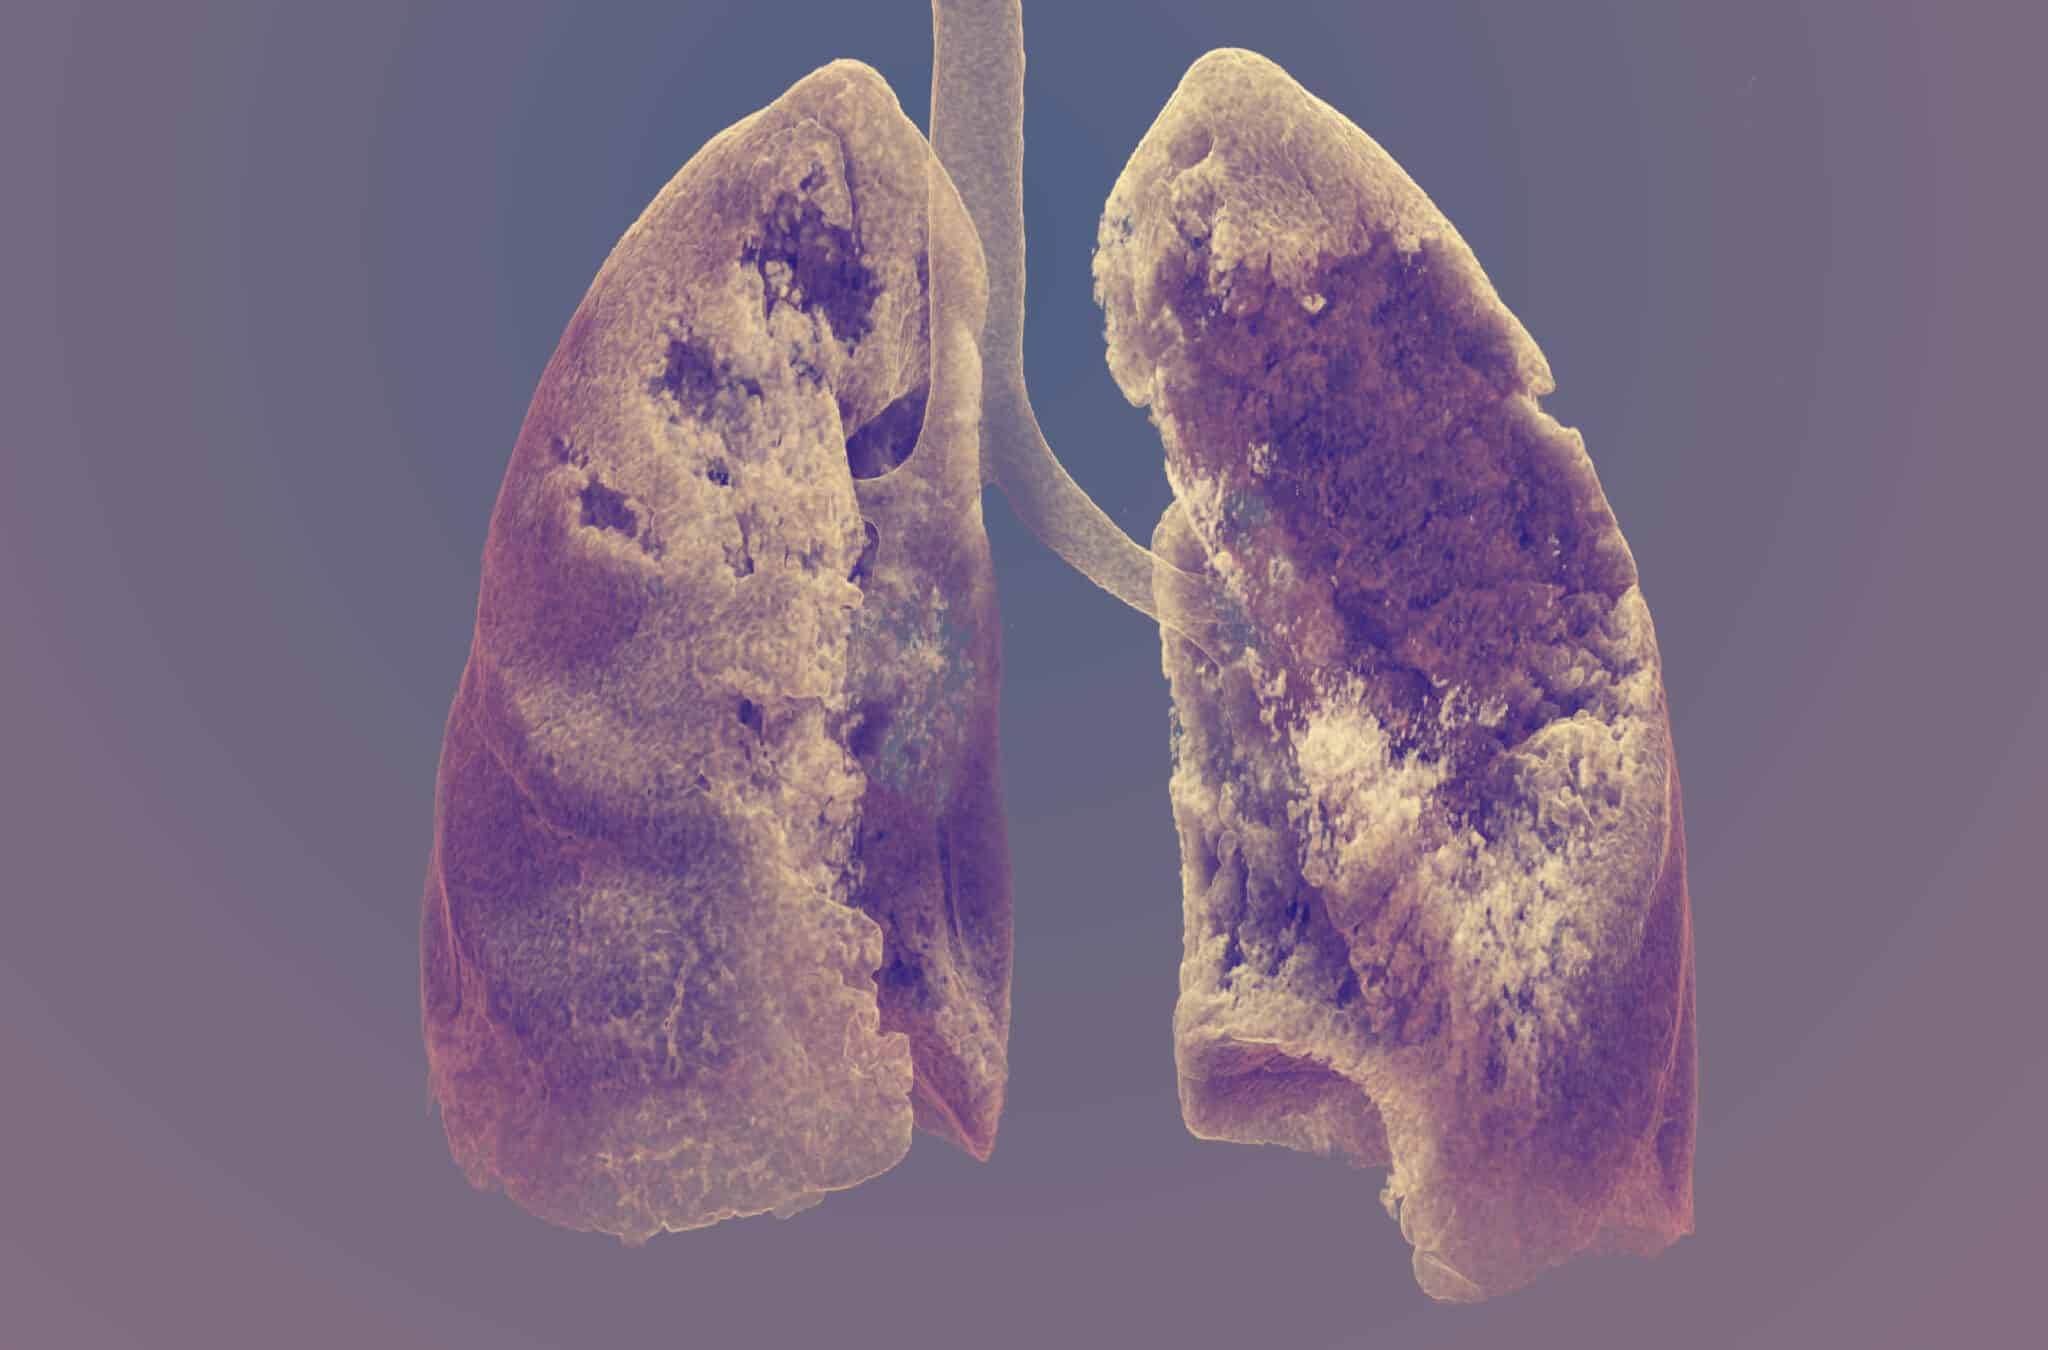 Un pulmón tras la Covid-19 gana un concurso de fotografía científica